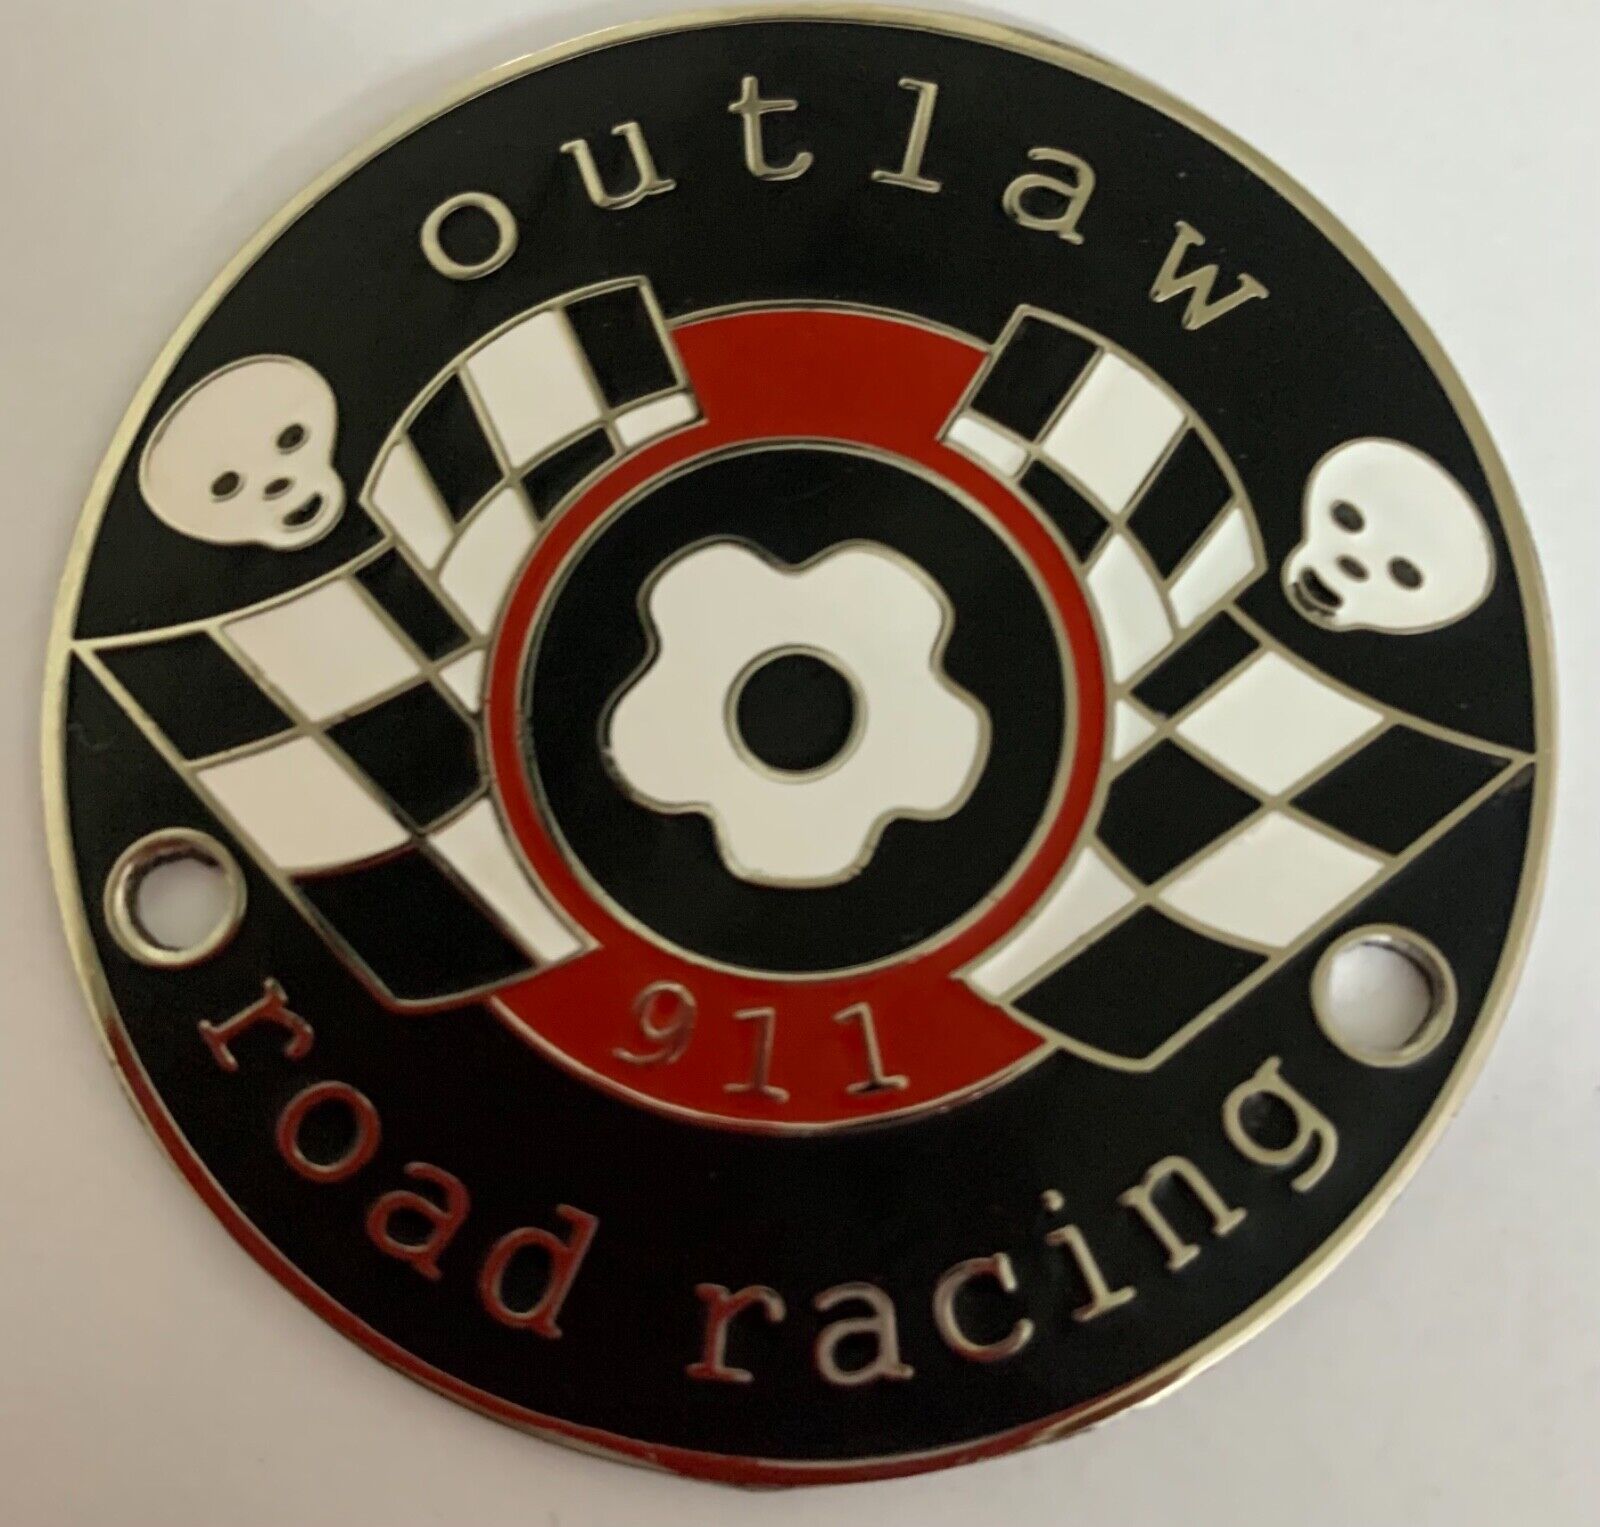 Car badge 911 road racing car grill badge emblem logos metal enamled 